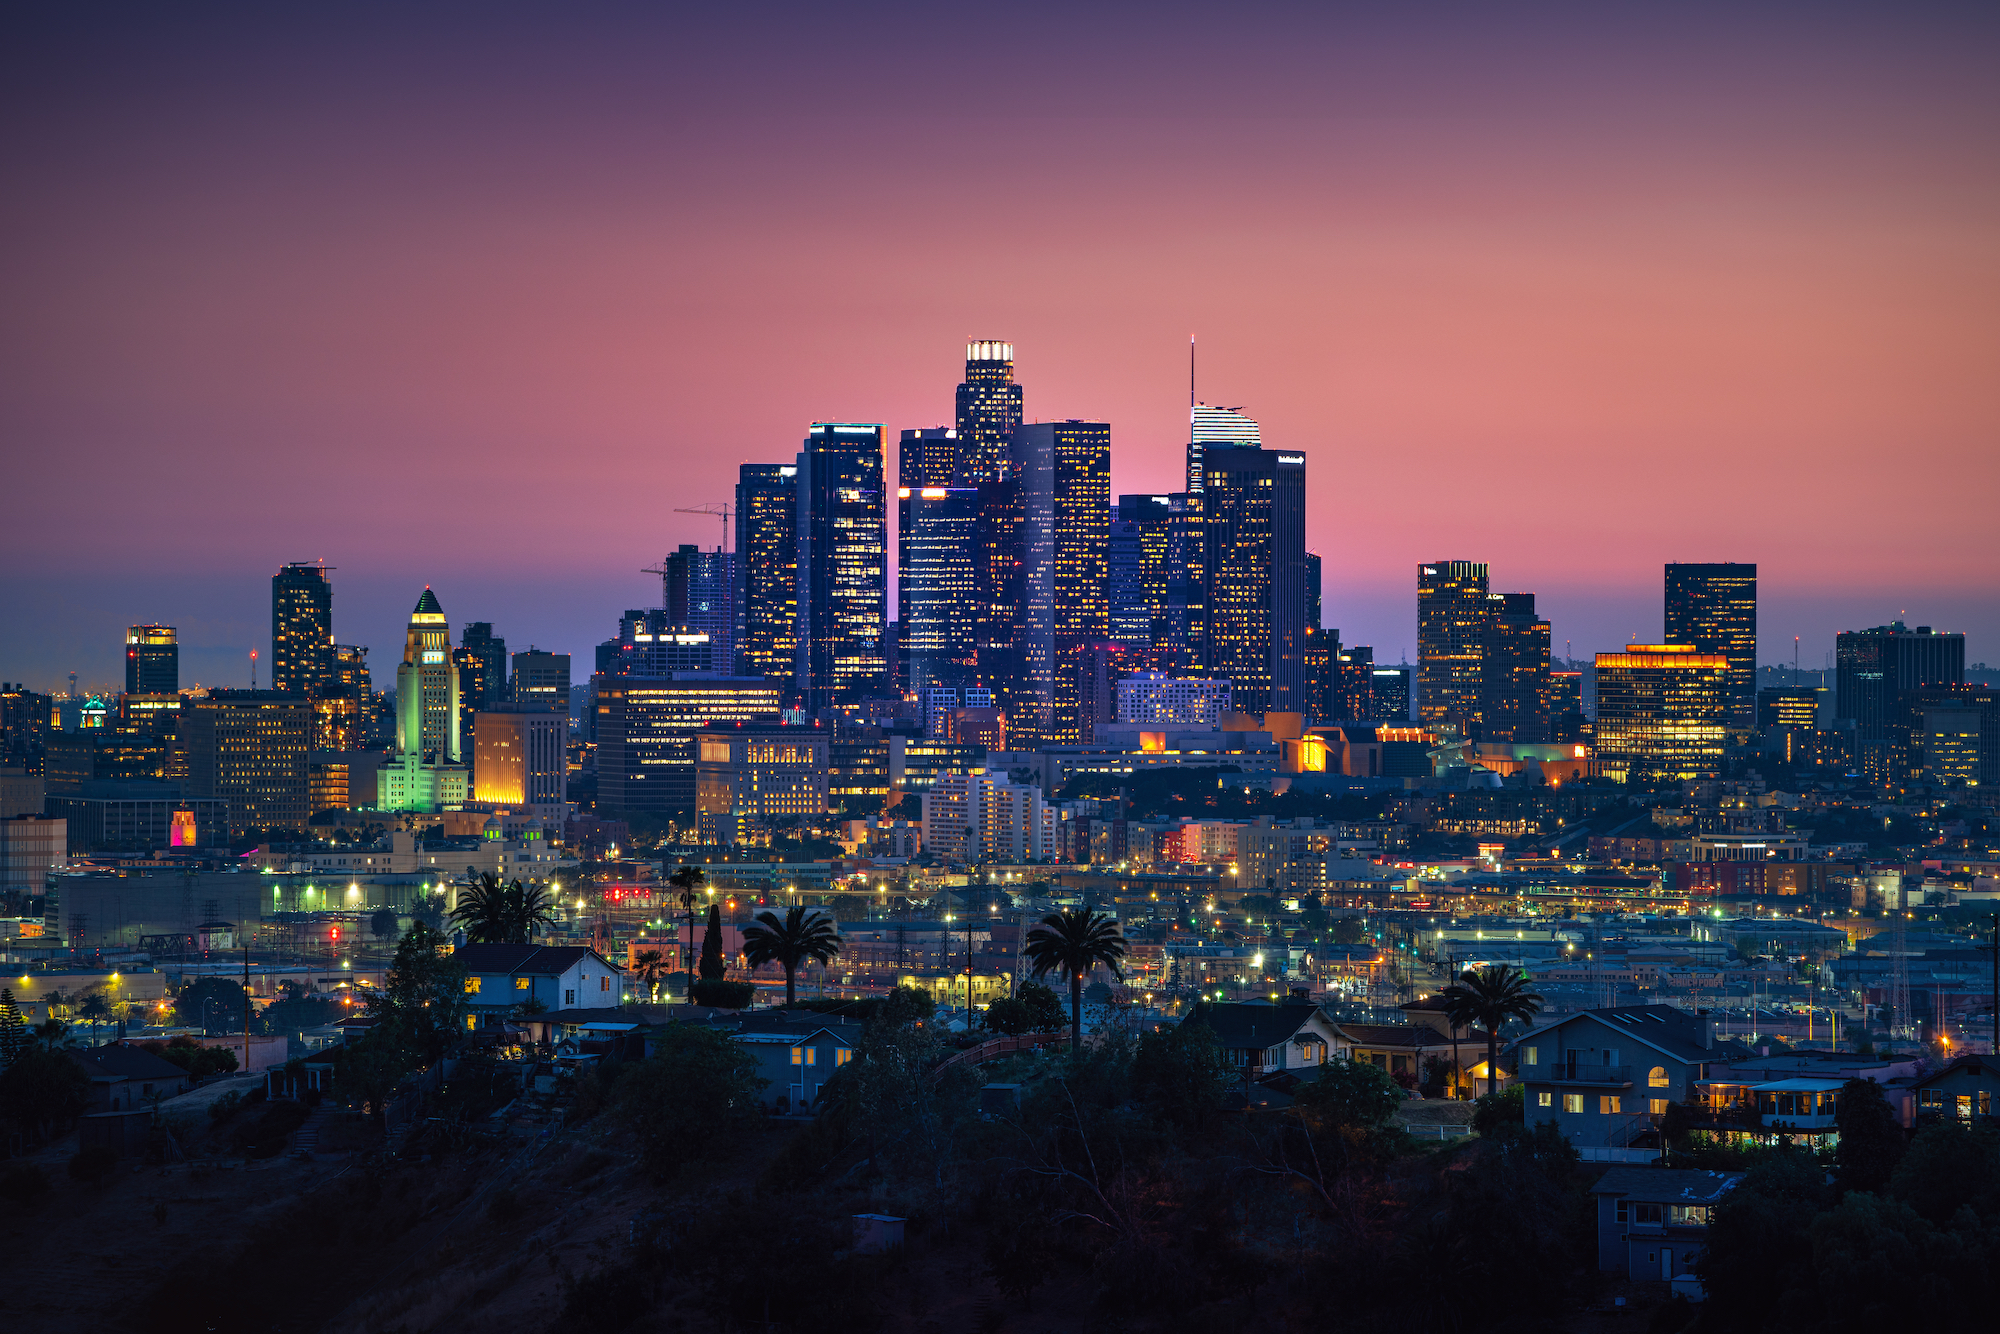 LA's skyline at night.